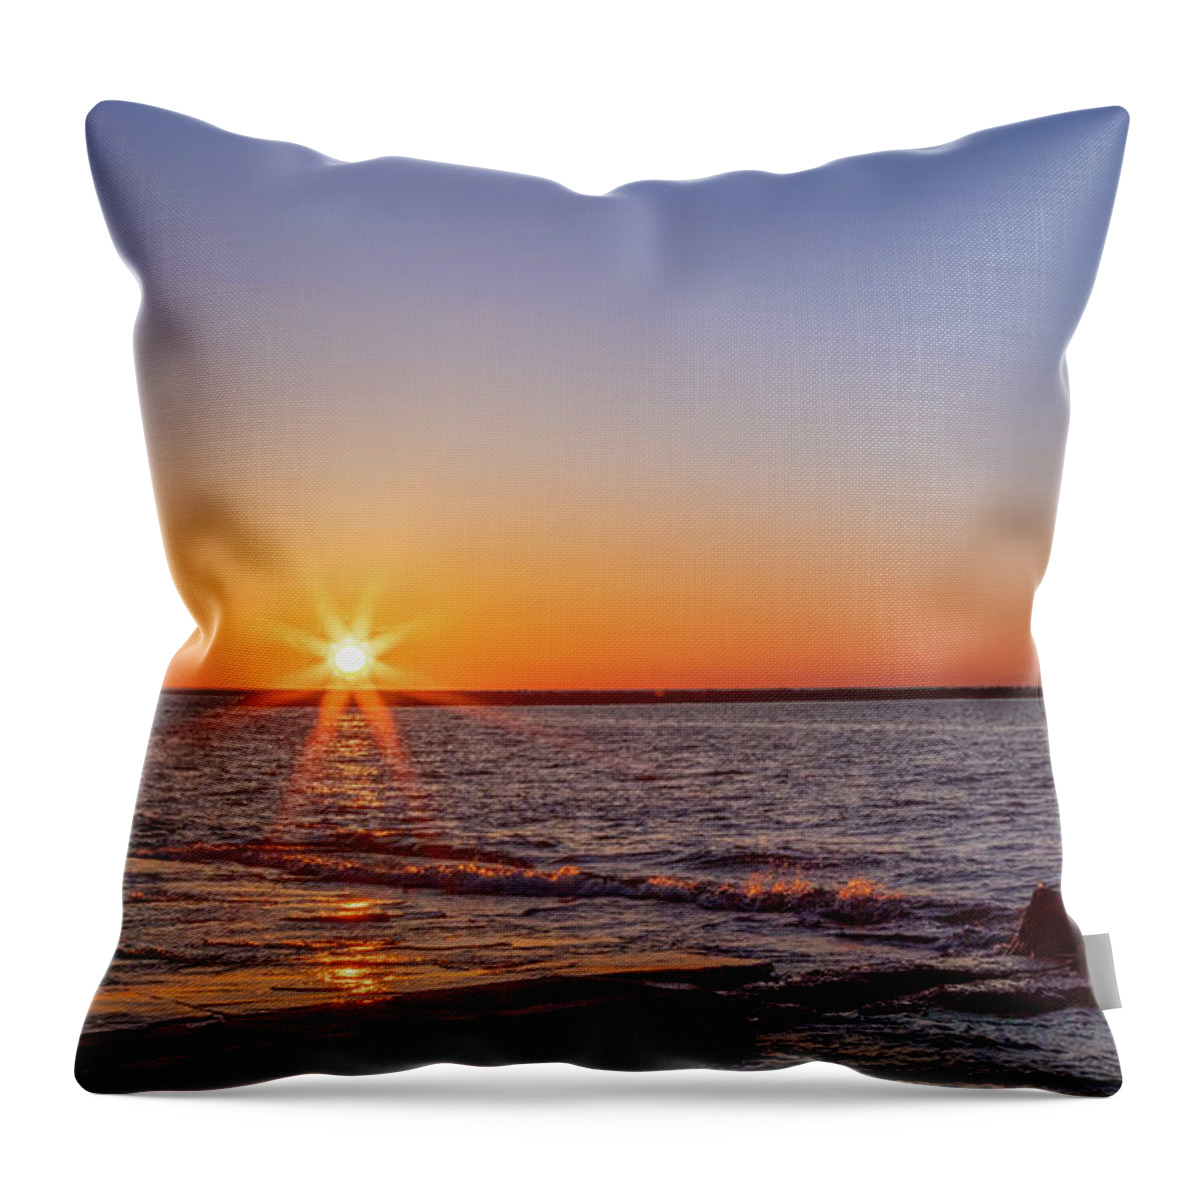 Vernal Throw Pillow featuring the photograph Vernal Equinox Sunset by Rod Best